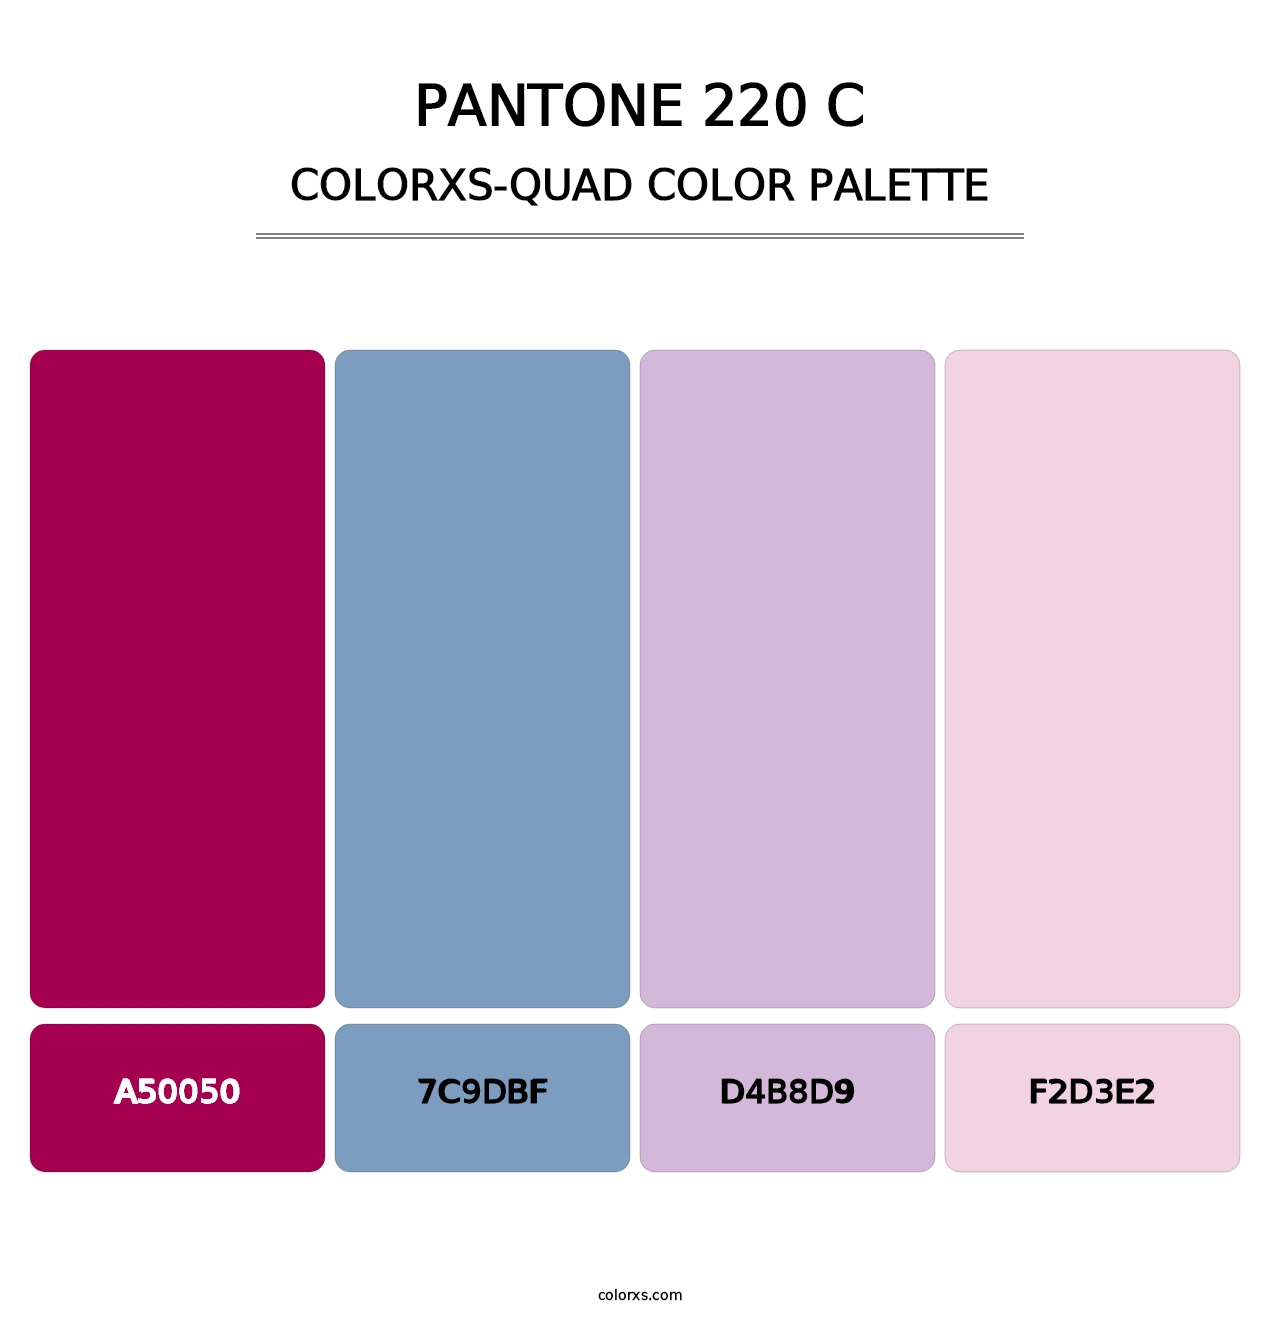 PANTONE 220 C - Colorxs Quad Palette